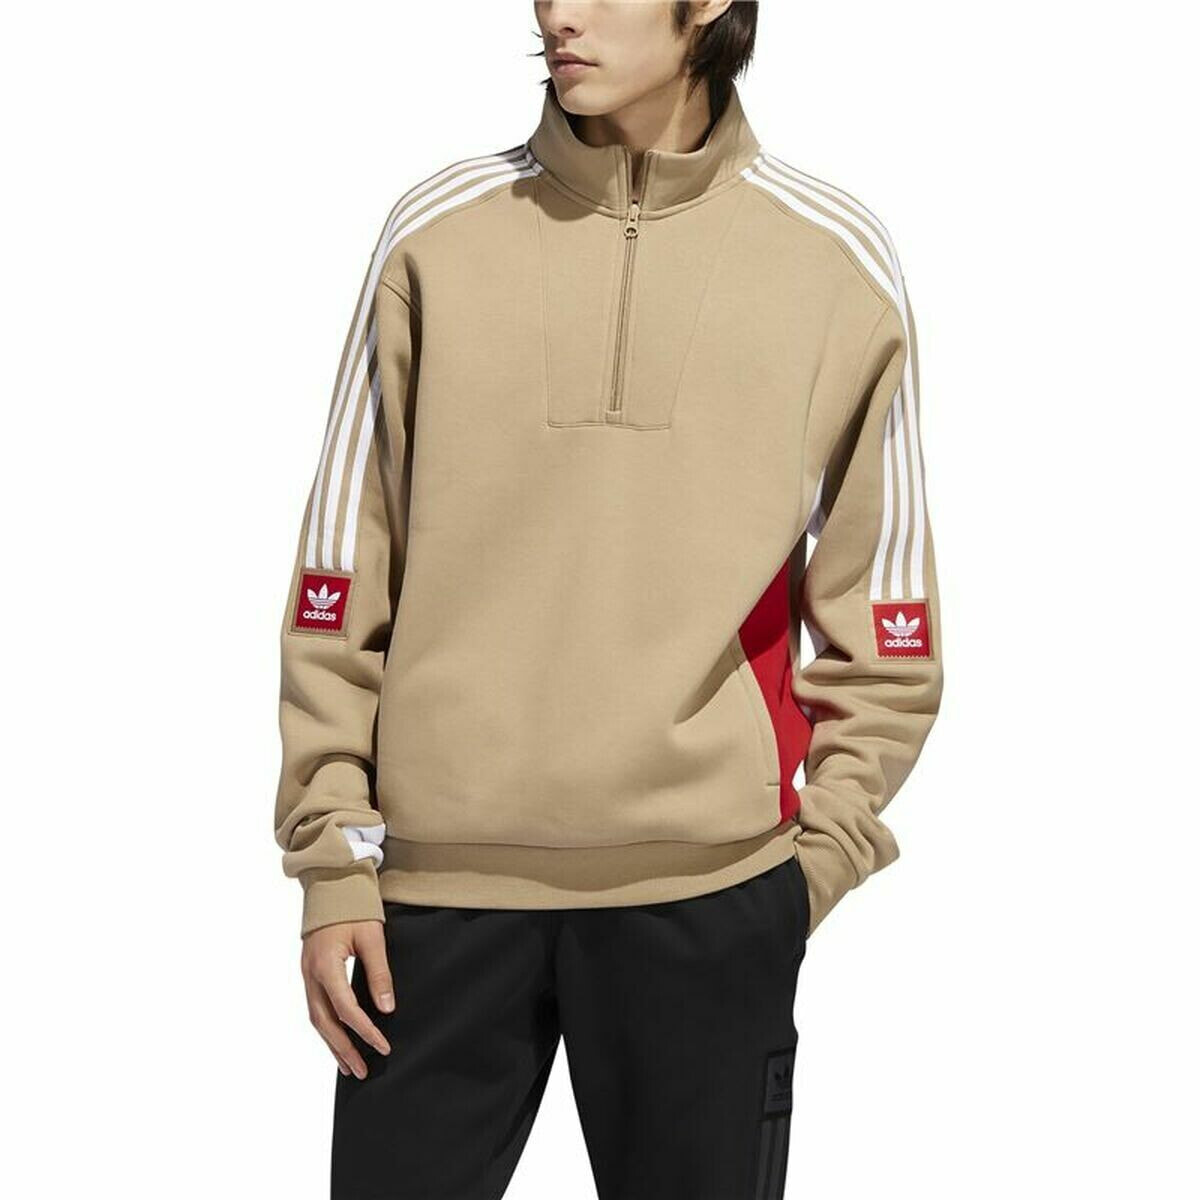 Men’s Sweatshirt without Hood Adidas Modular Brown